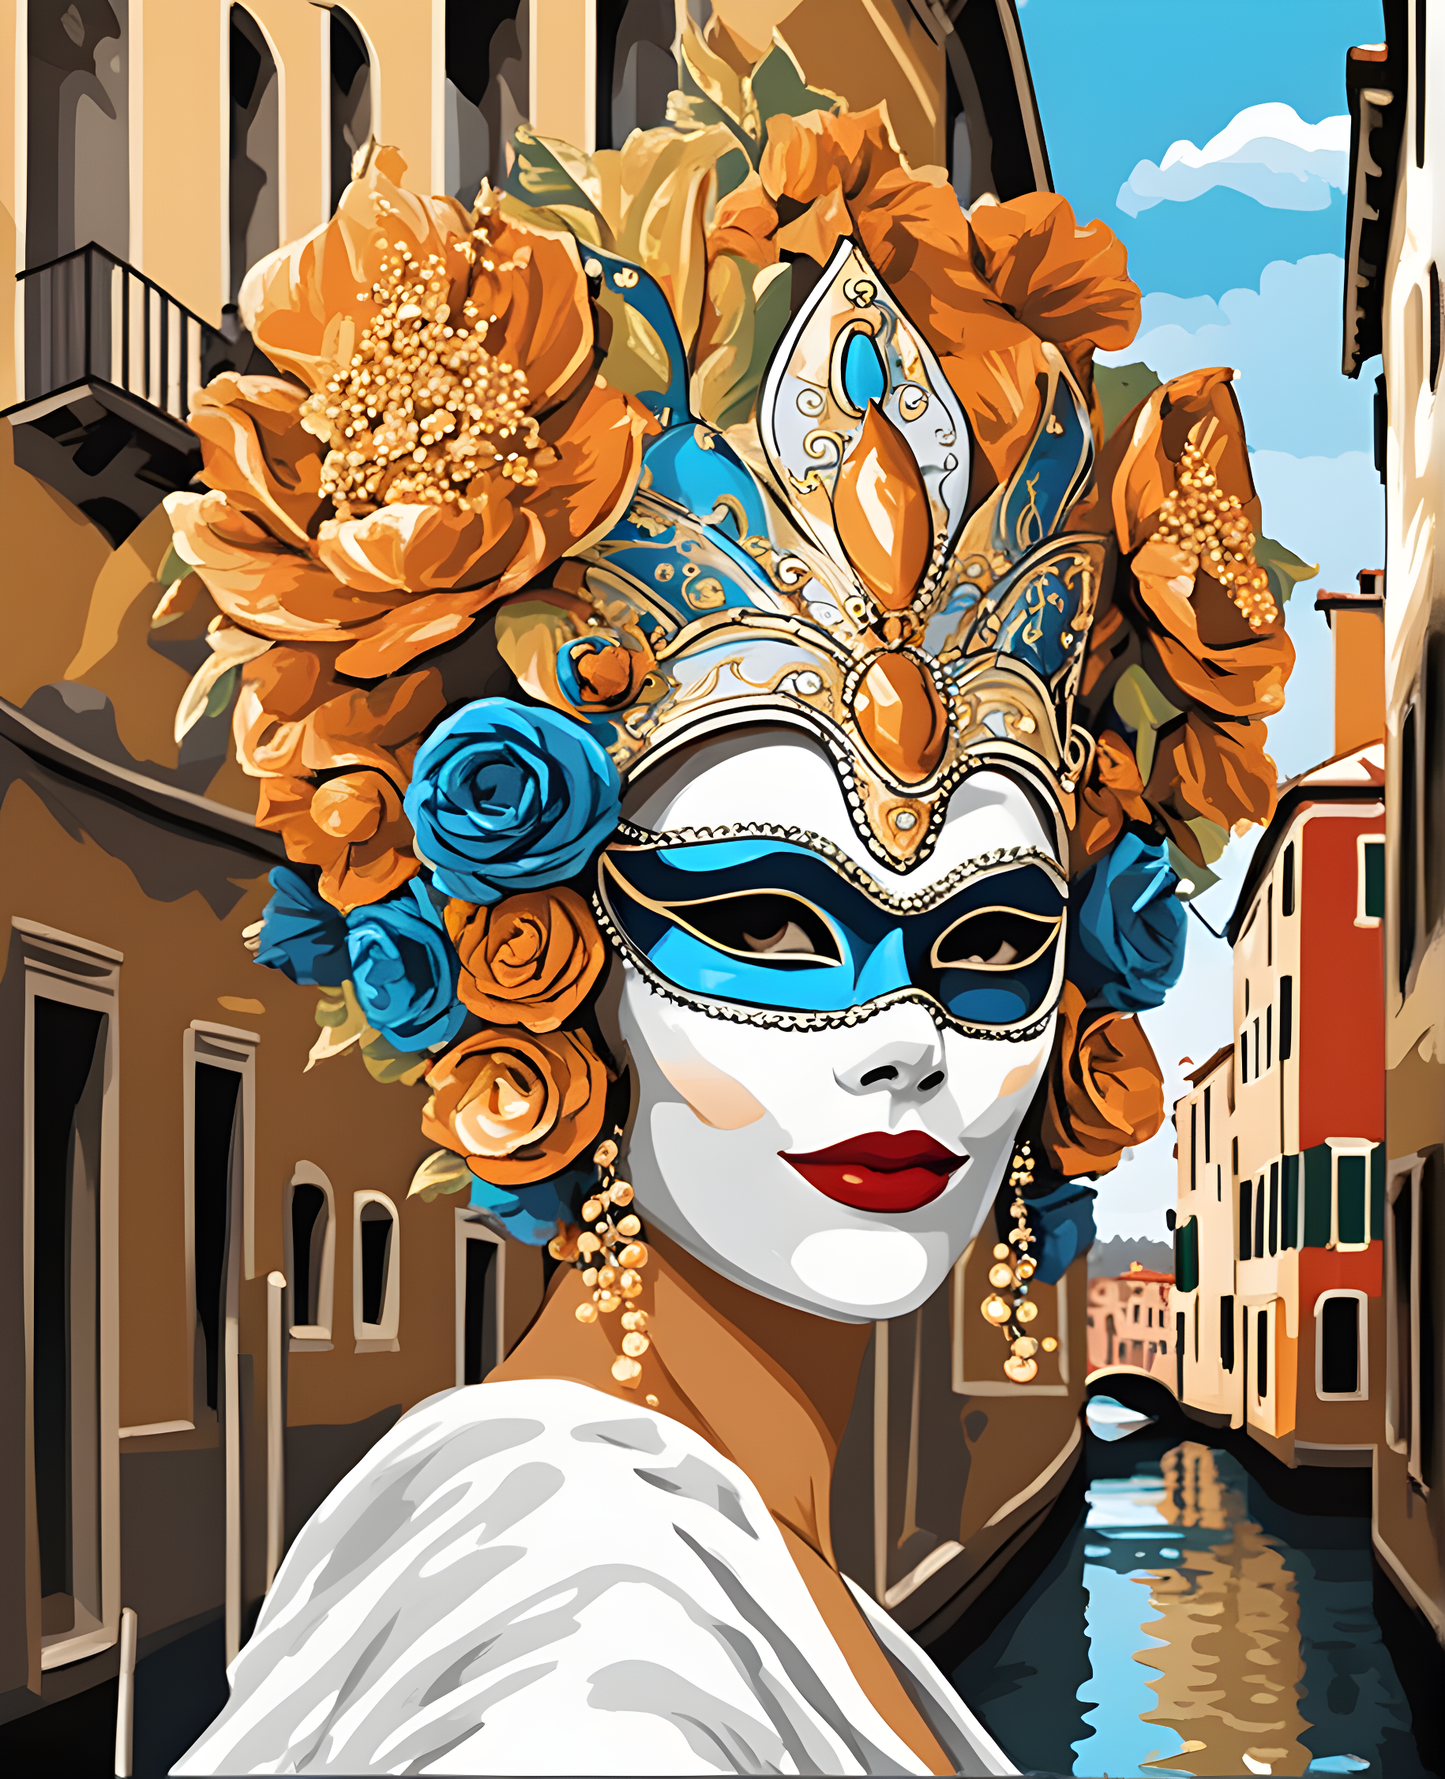 Venetian Mask (9) - Van-Go Paint-By-Number Kit